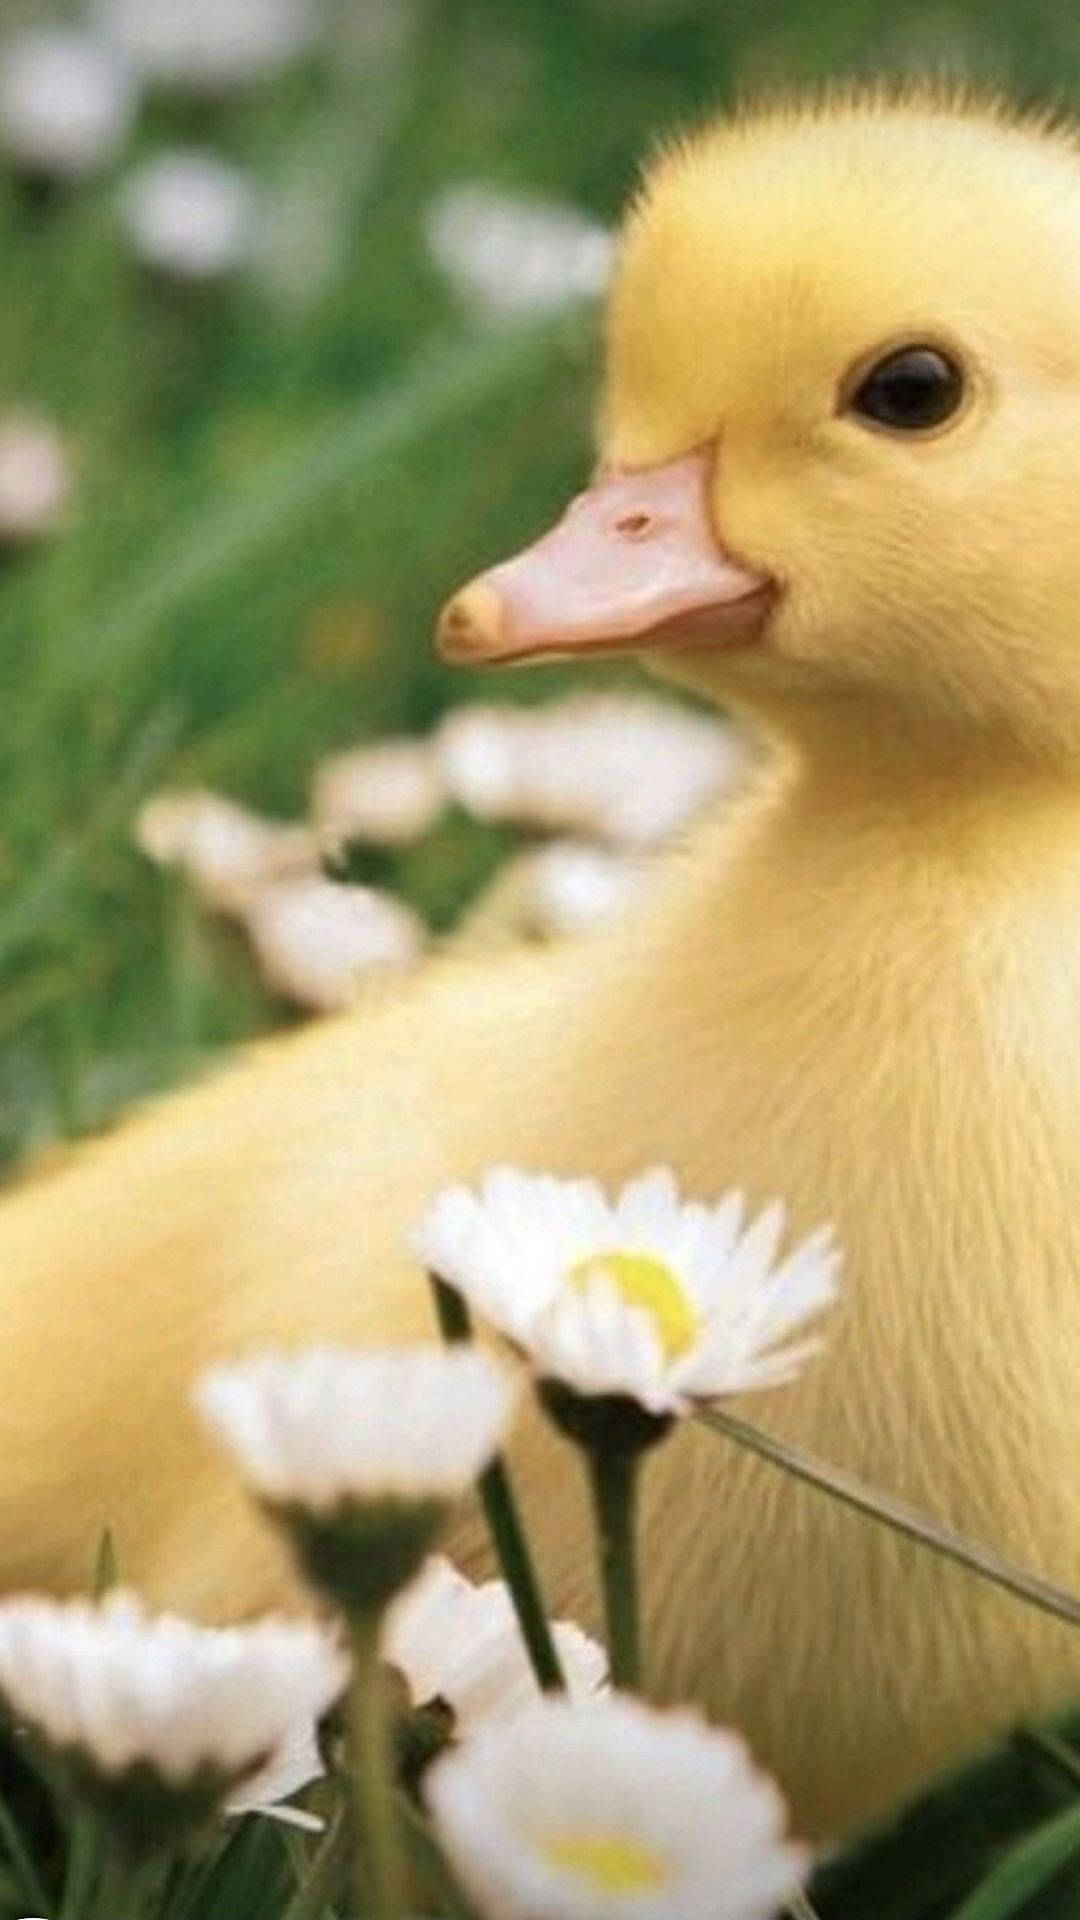 Sweet baby duck wallpaper: Hình nền với chú vịt con đáng yêu sẽ mang đến cho bạn sự ngọt ngào và tình cảm. Hãy cùng chiêm ngưỡng hình ảnh ngộ nghĩnh này để tìm lại tuổi thơ của mình!